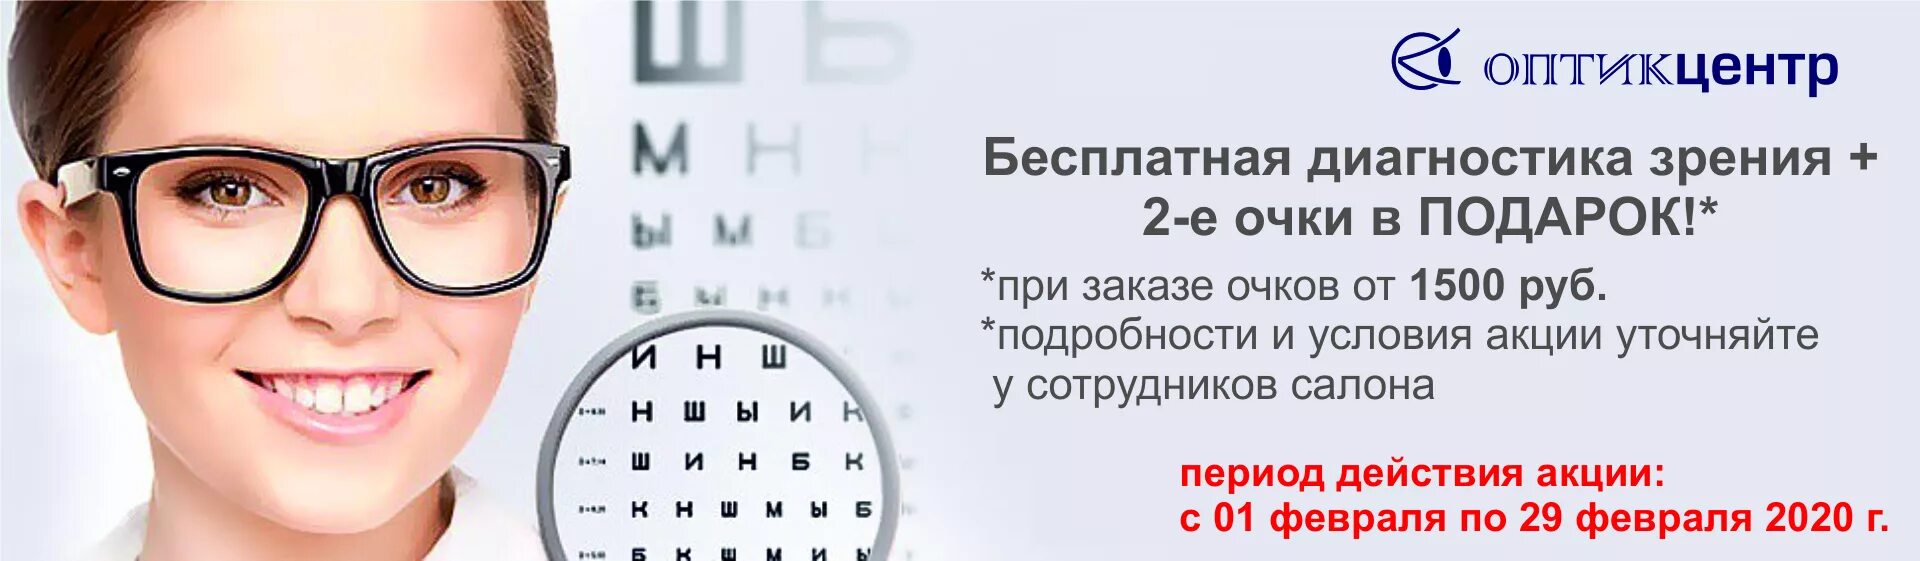 Проверка зрения калининград. Проверка зрения реклама. Очки для зрения баннер. Реклама очков для зрения. Очки офтальмолога.